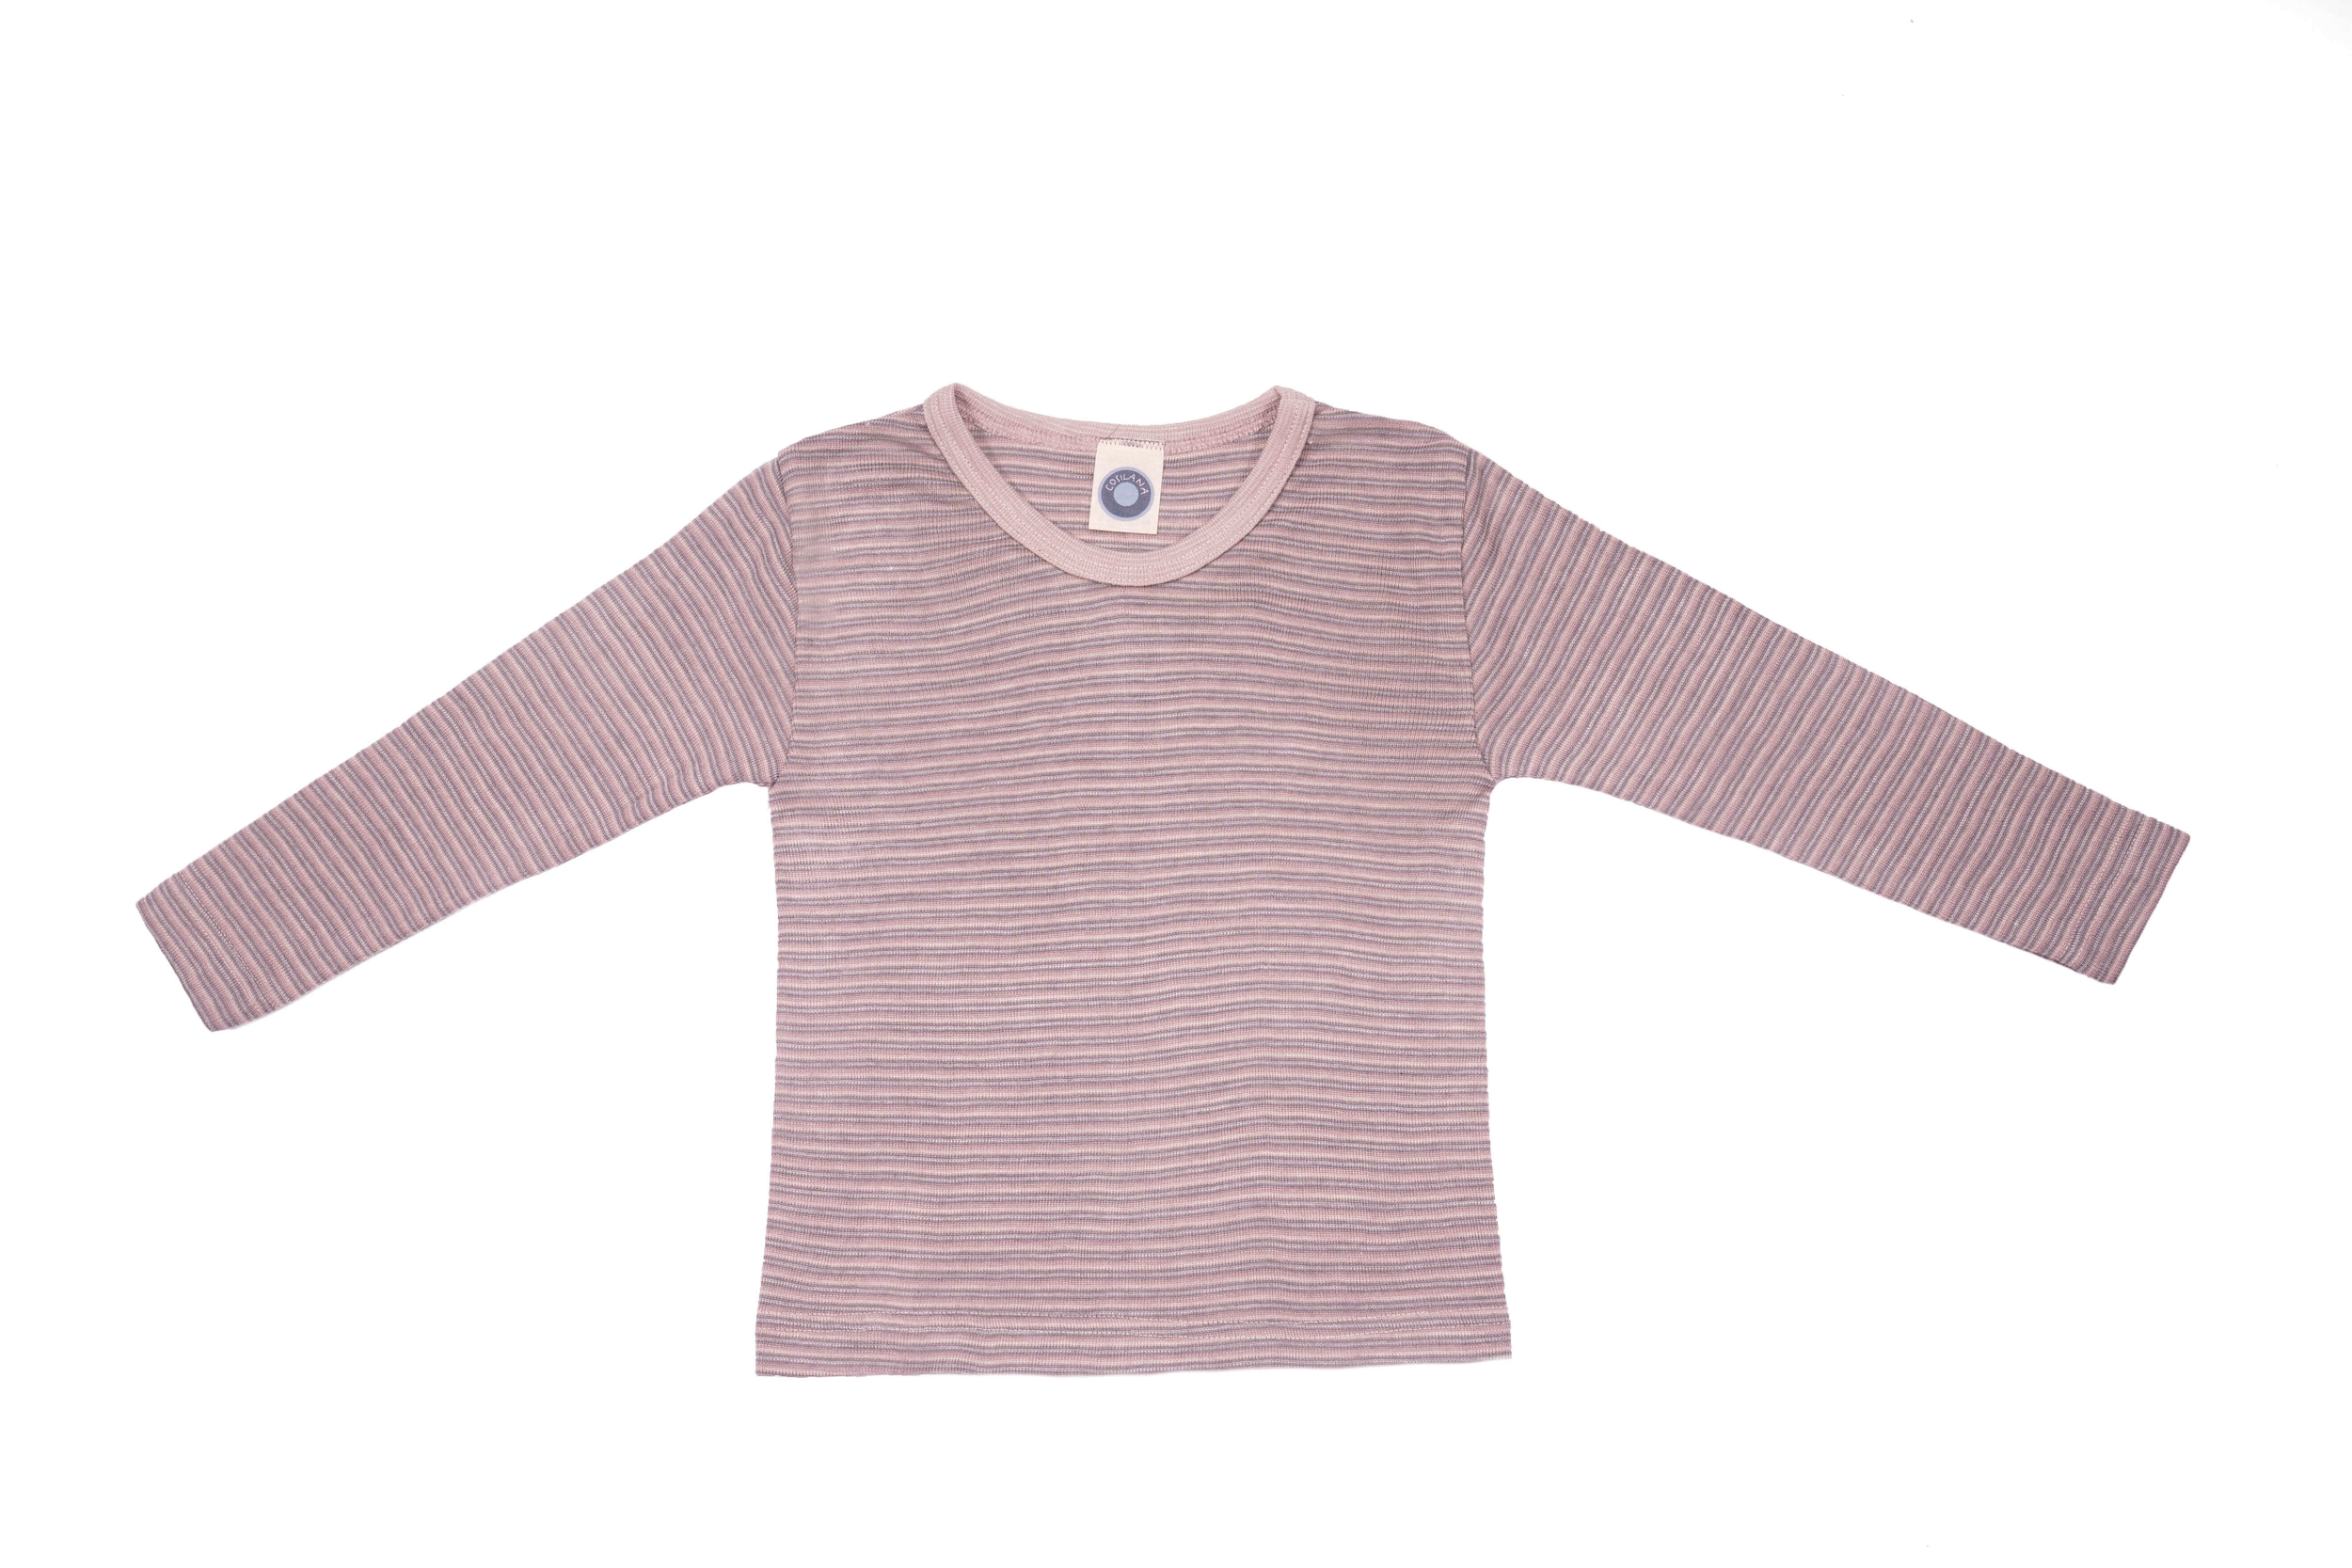 Cosilana T-shirt manches longues enfants Laine/soie rose/gris/naturel rayé71233-264